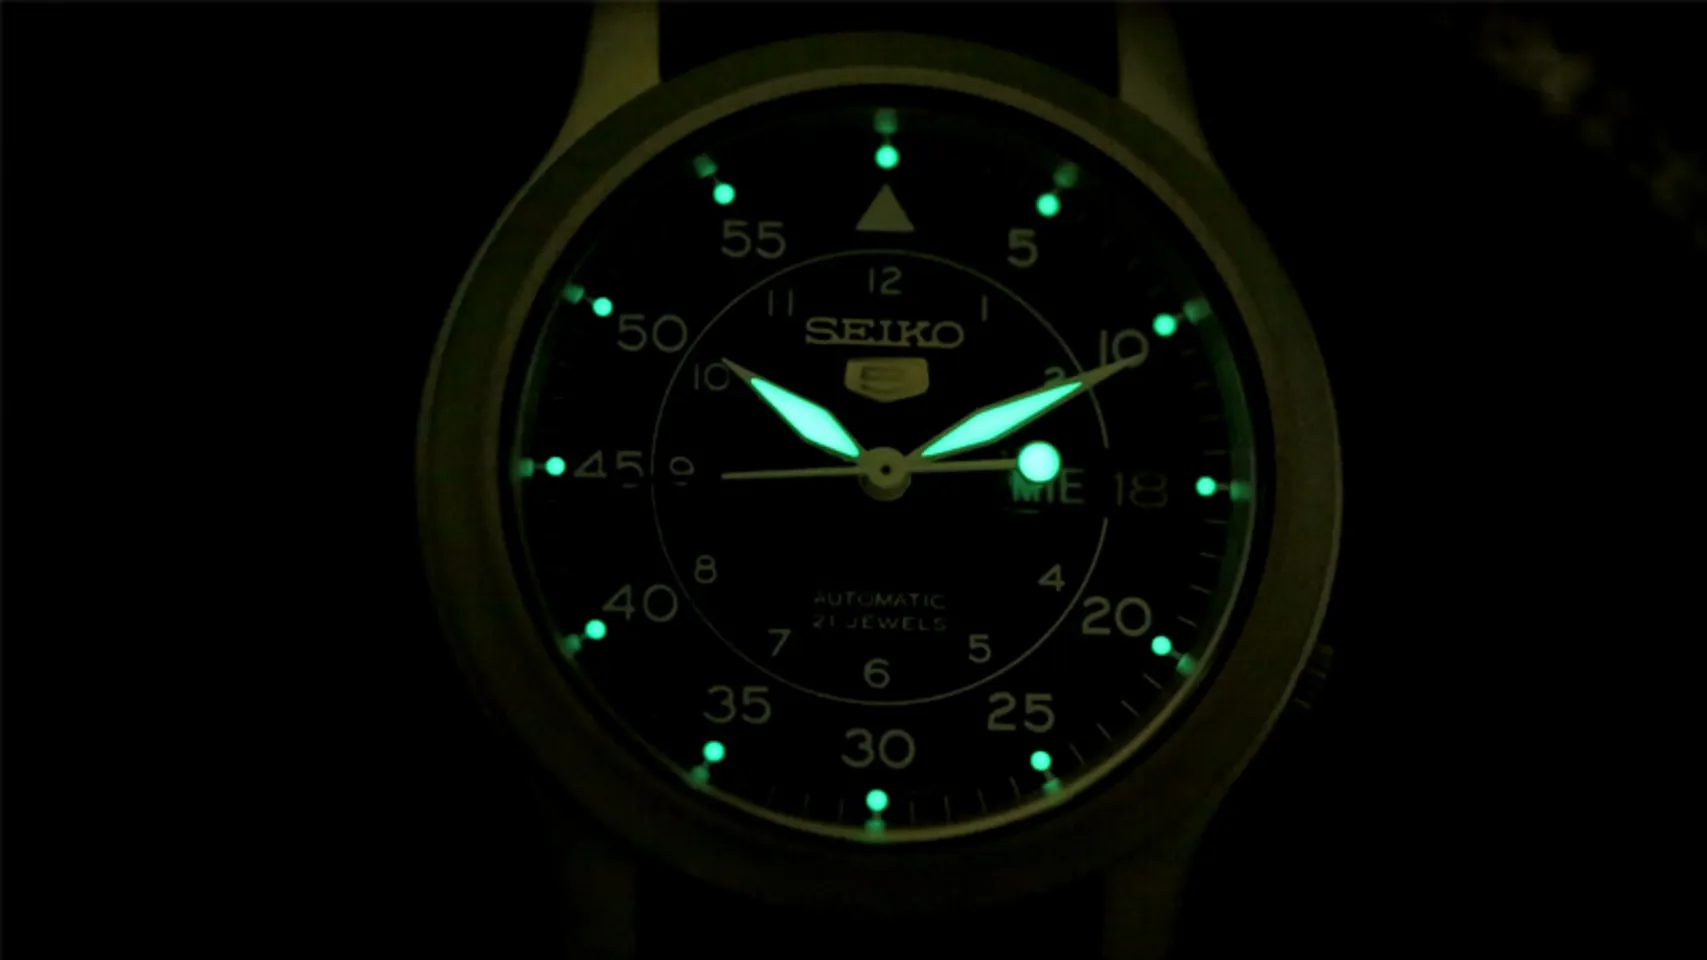 đồng hồ Seiko 5 SNK809 chính hãng Phát quang rất tốt trong bóng tối